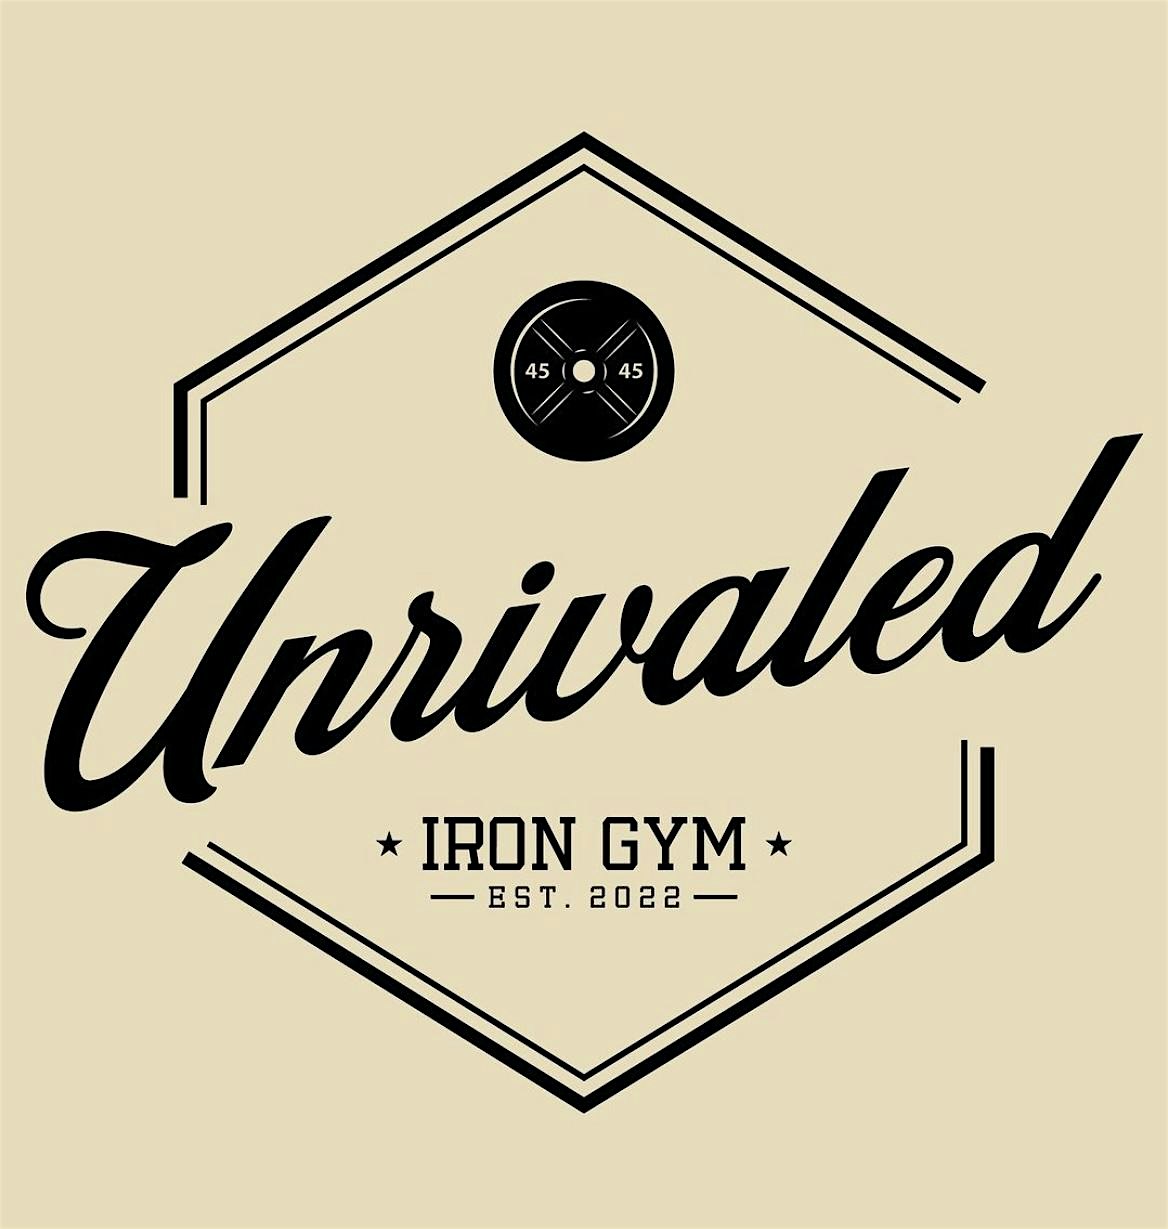 Unrivaled Iron gym